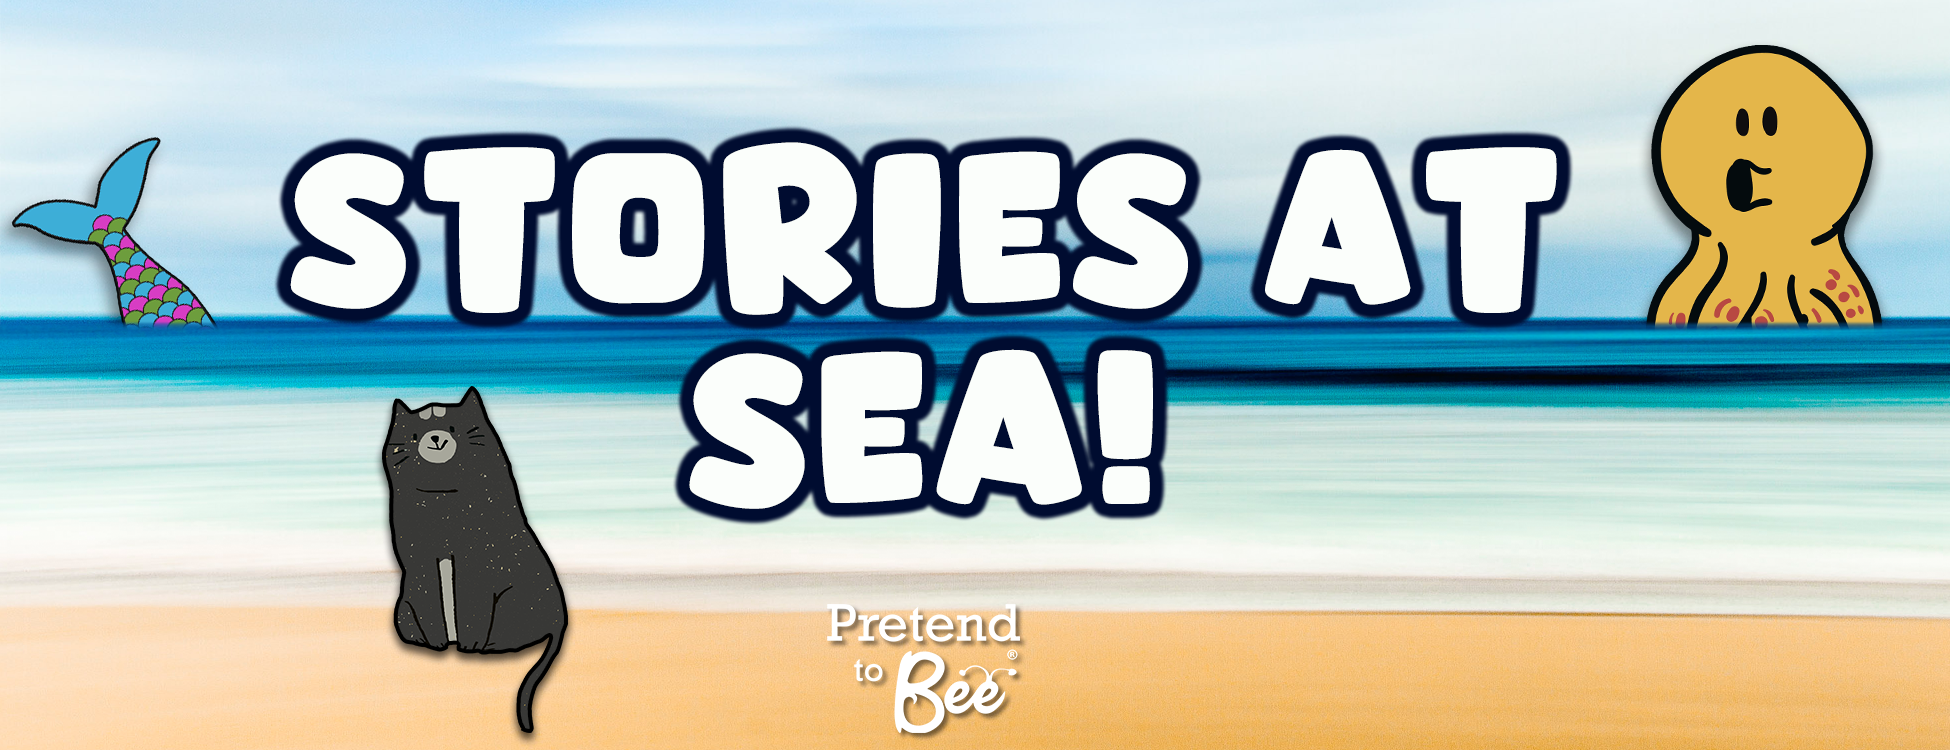 Stories at Sea!